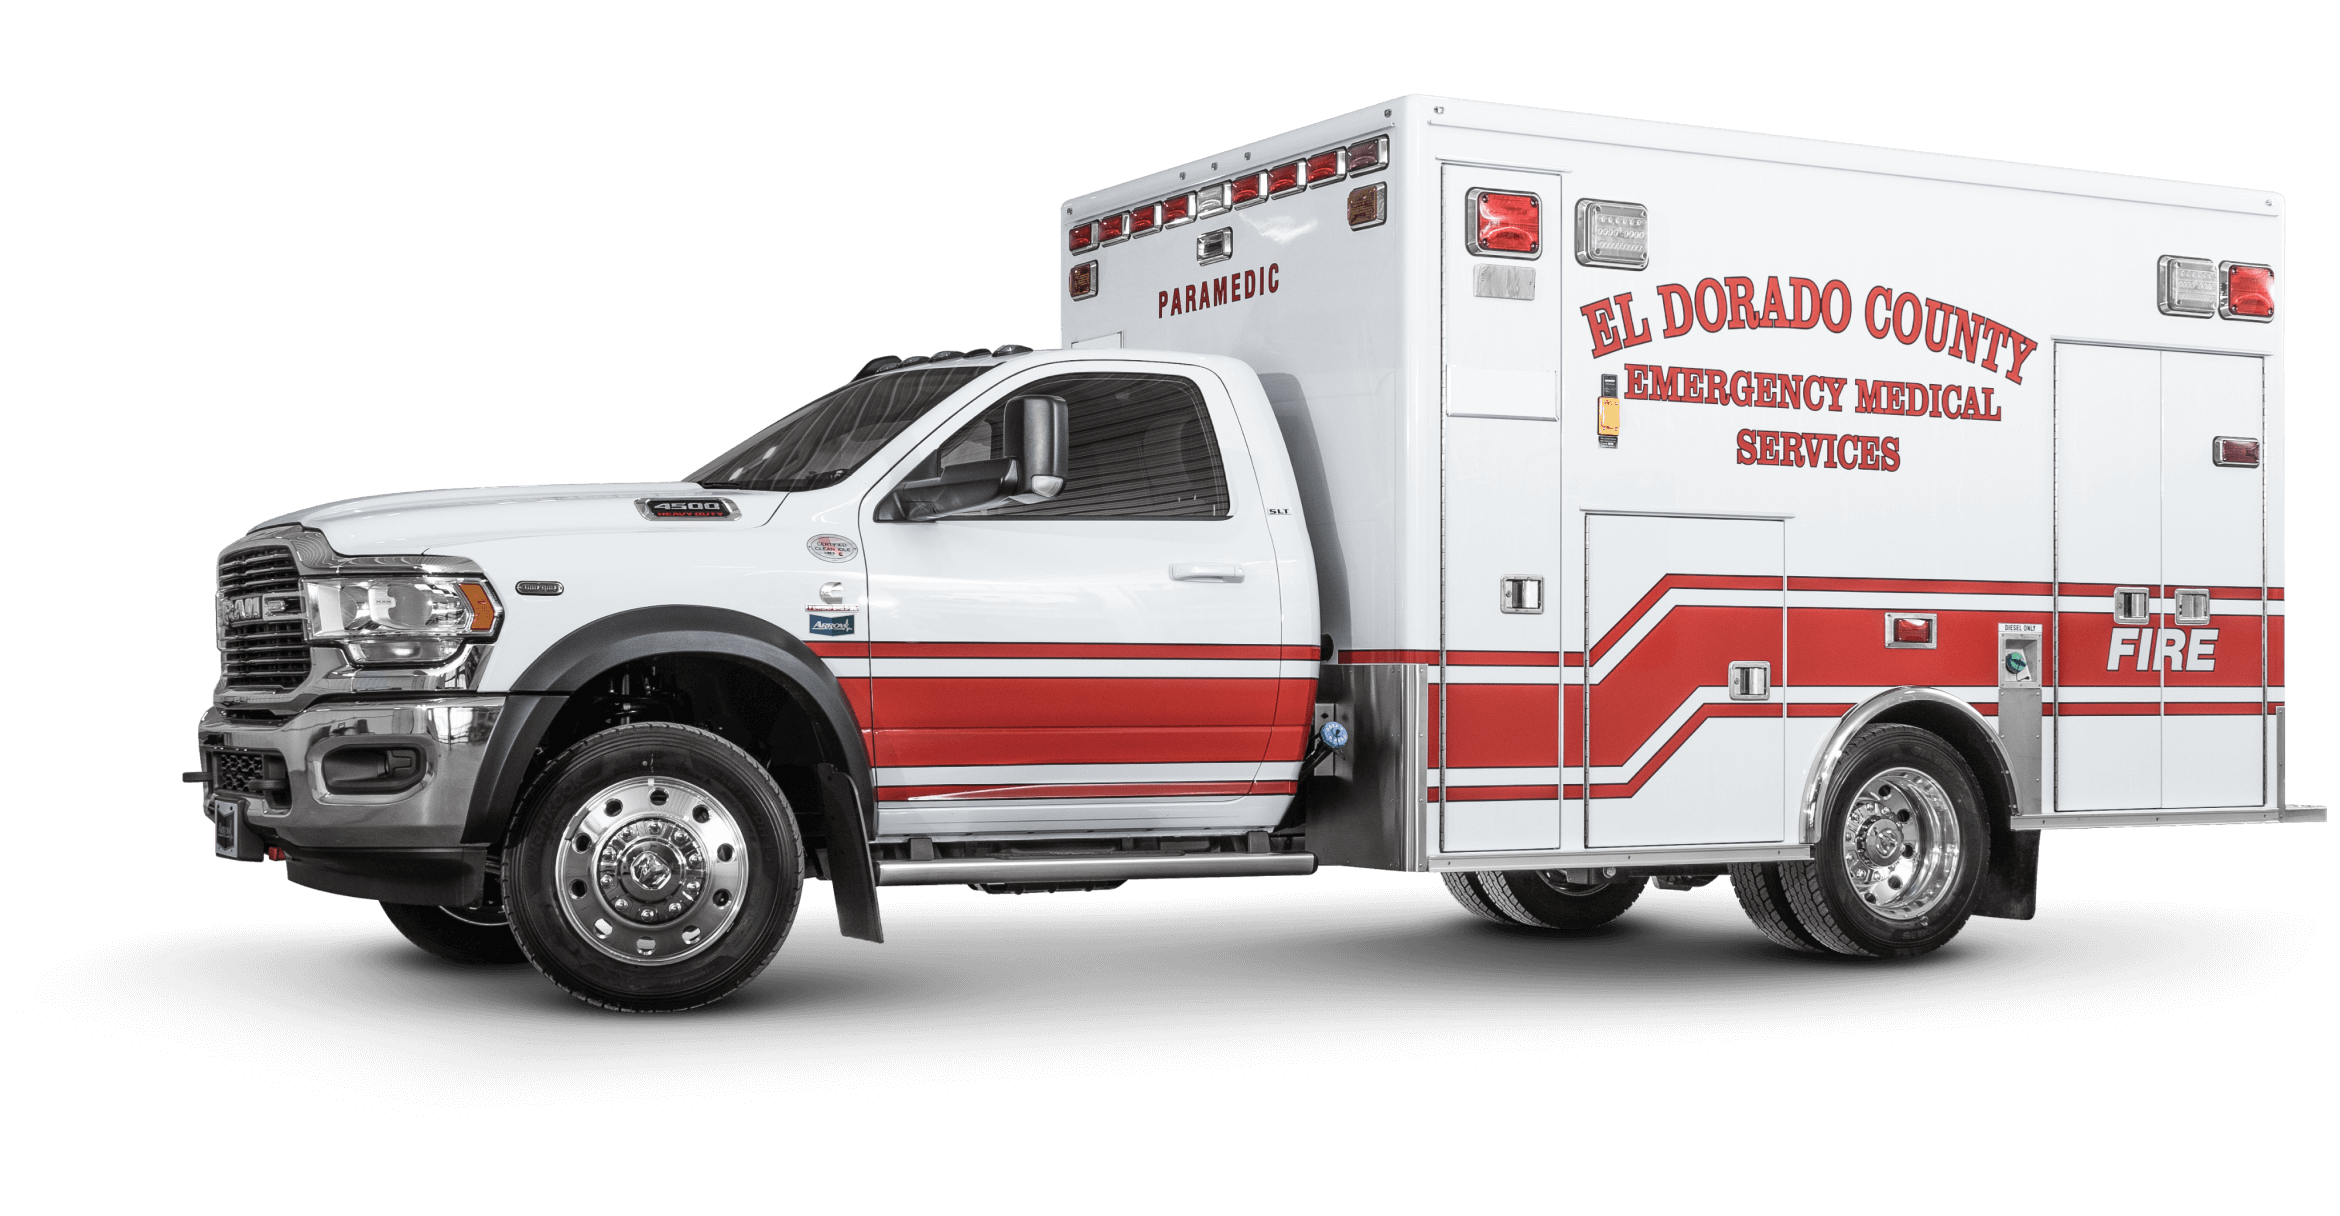 El Dorado County EMS Ram 4500 Heavy Duty Ambulance